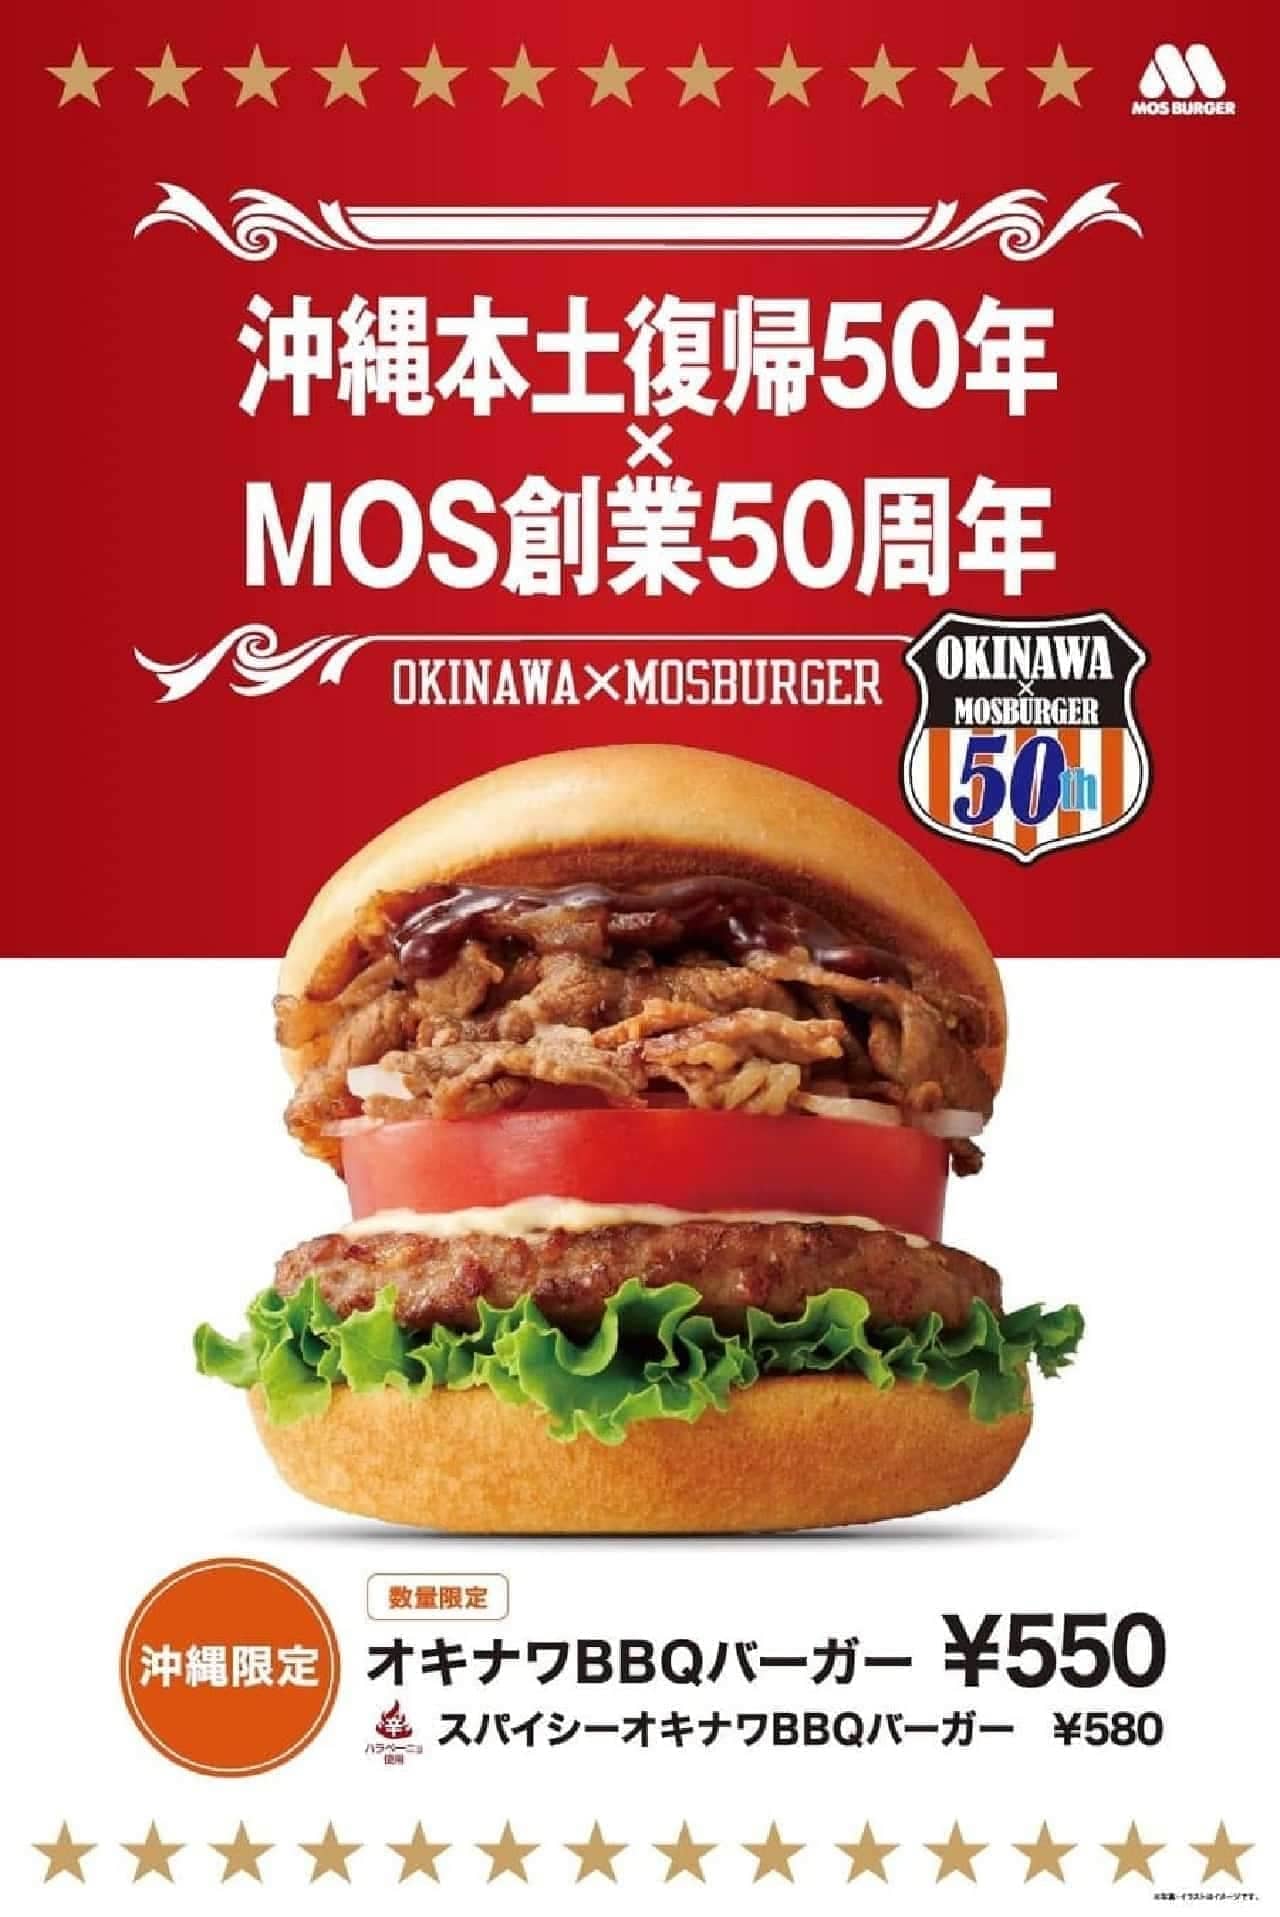 Okinawa BBQ Burger" at Okinawa Mos.